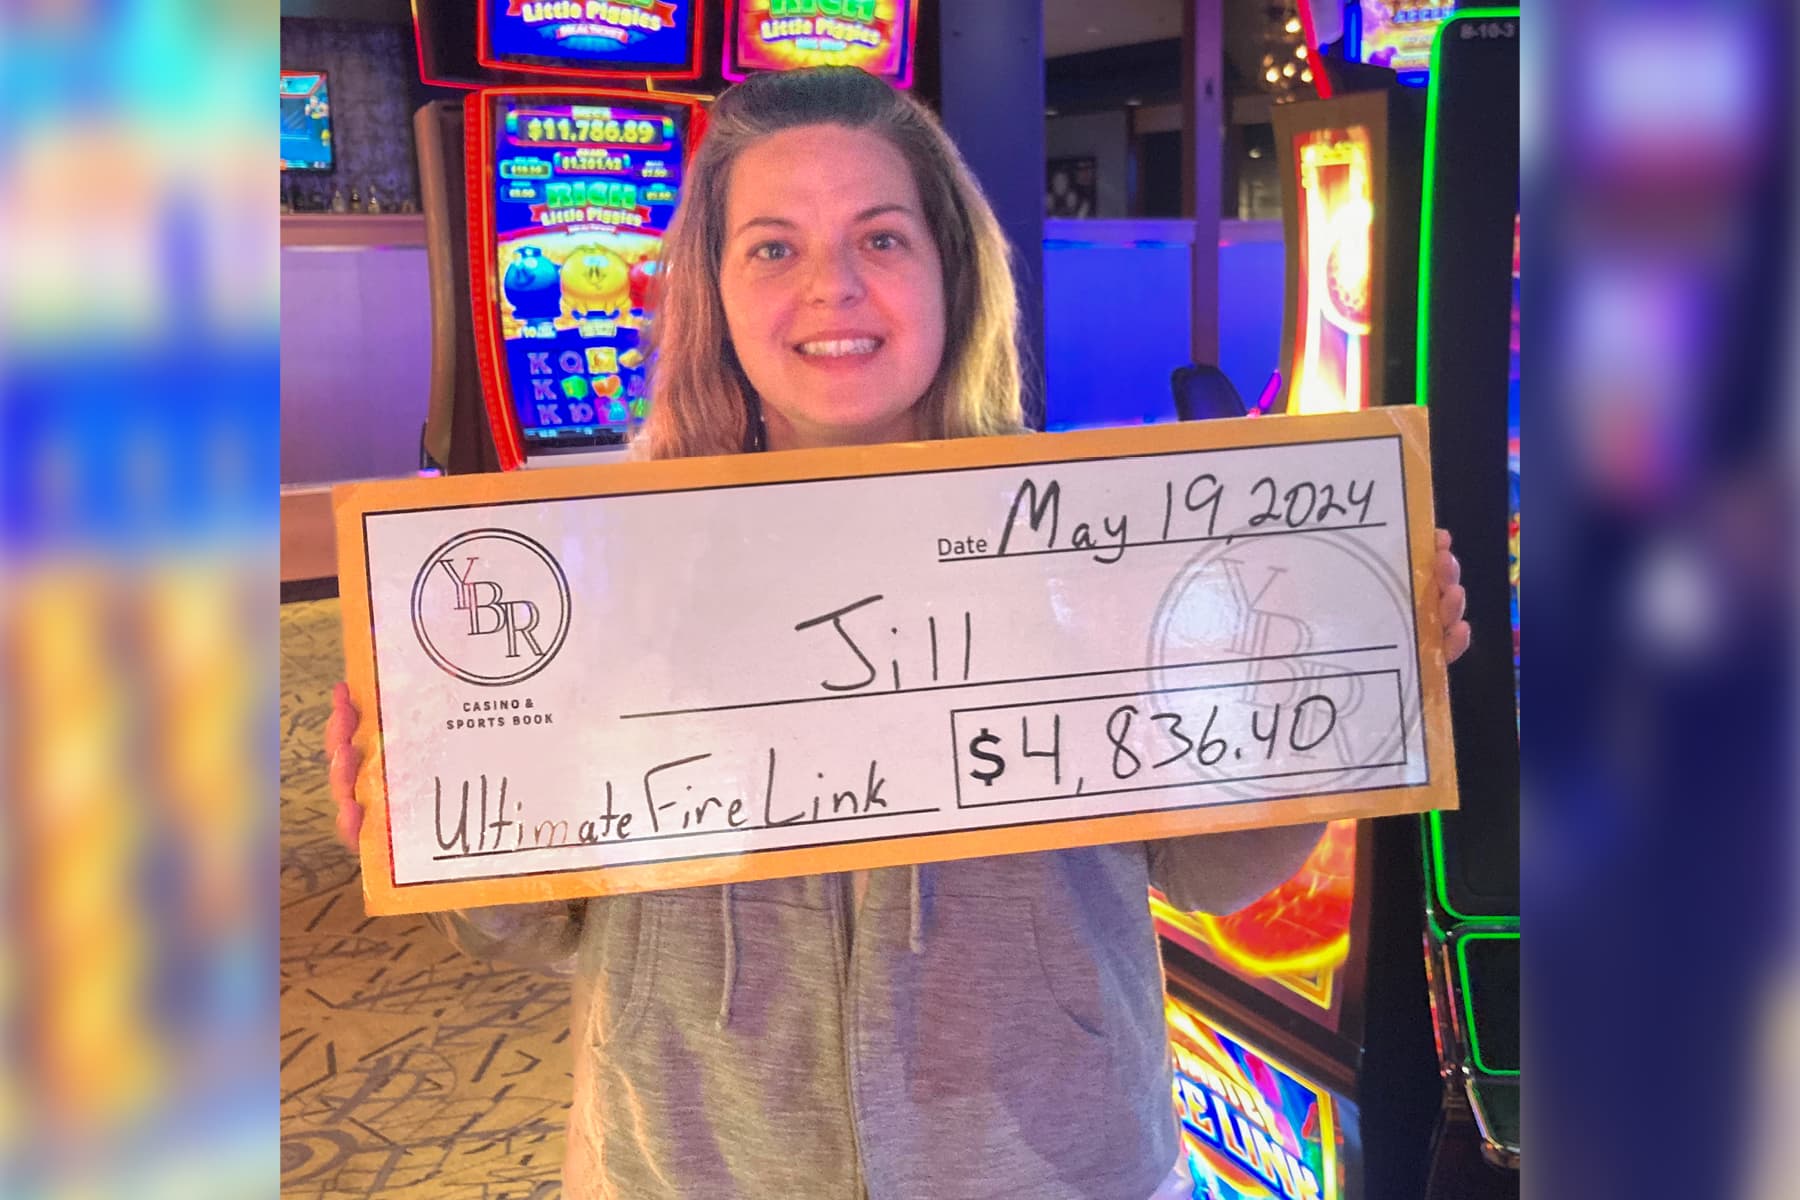 Jill won $4,836